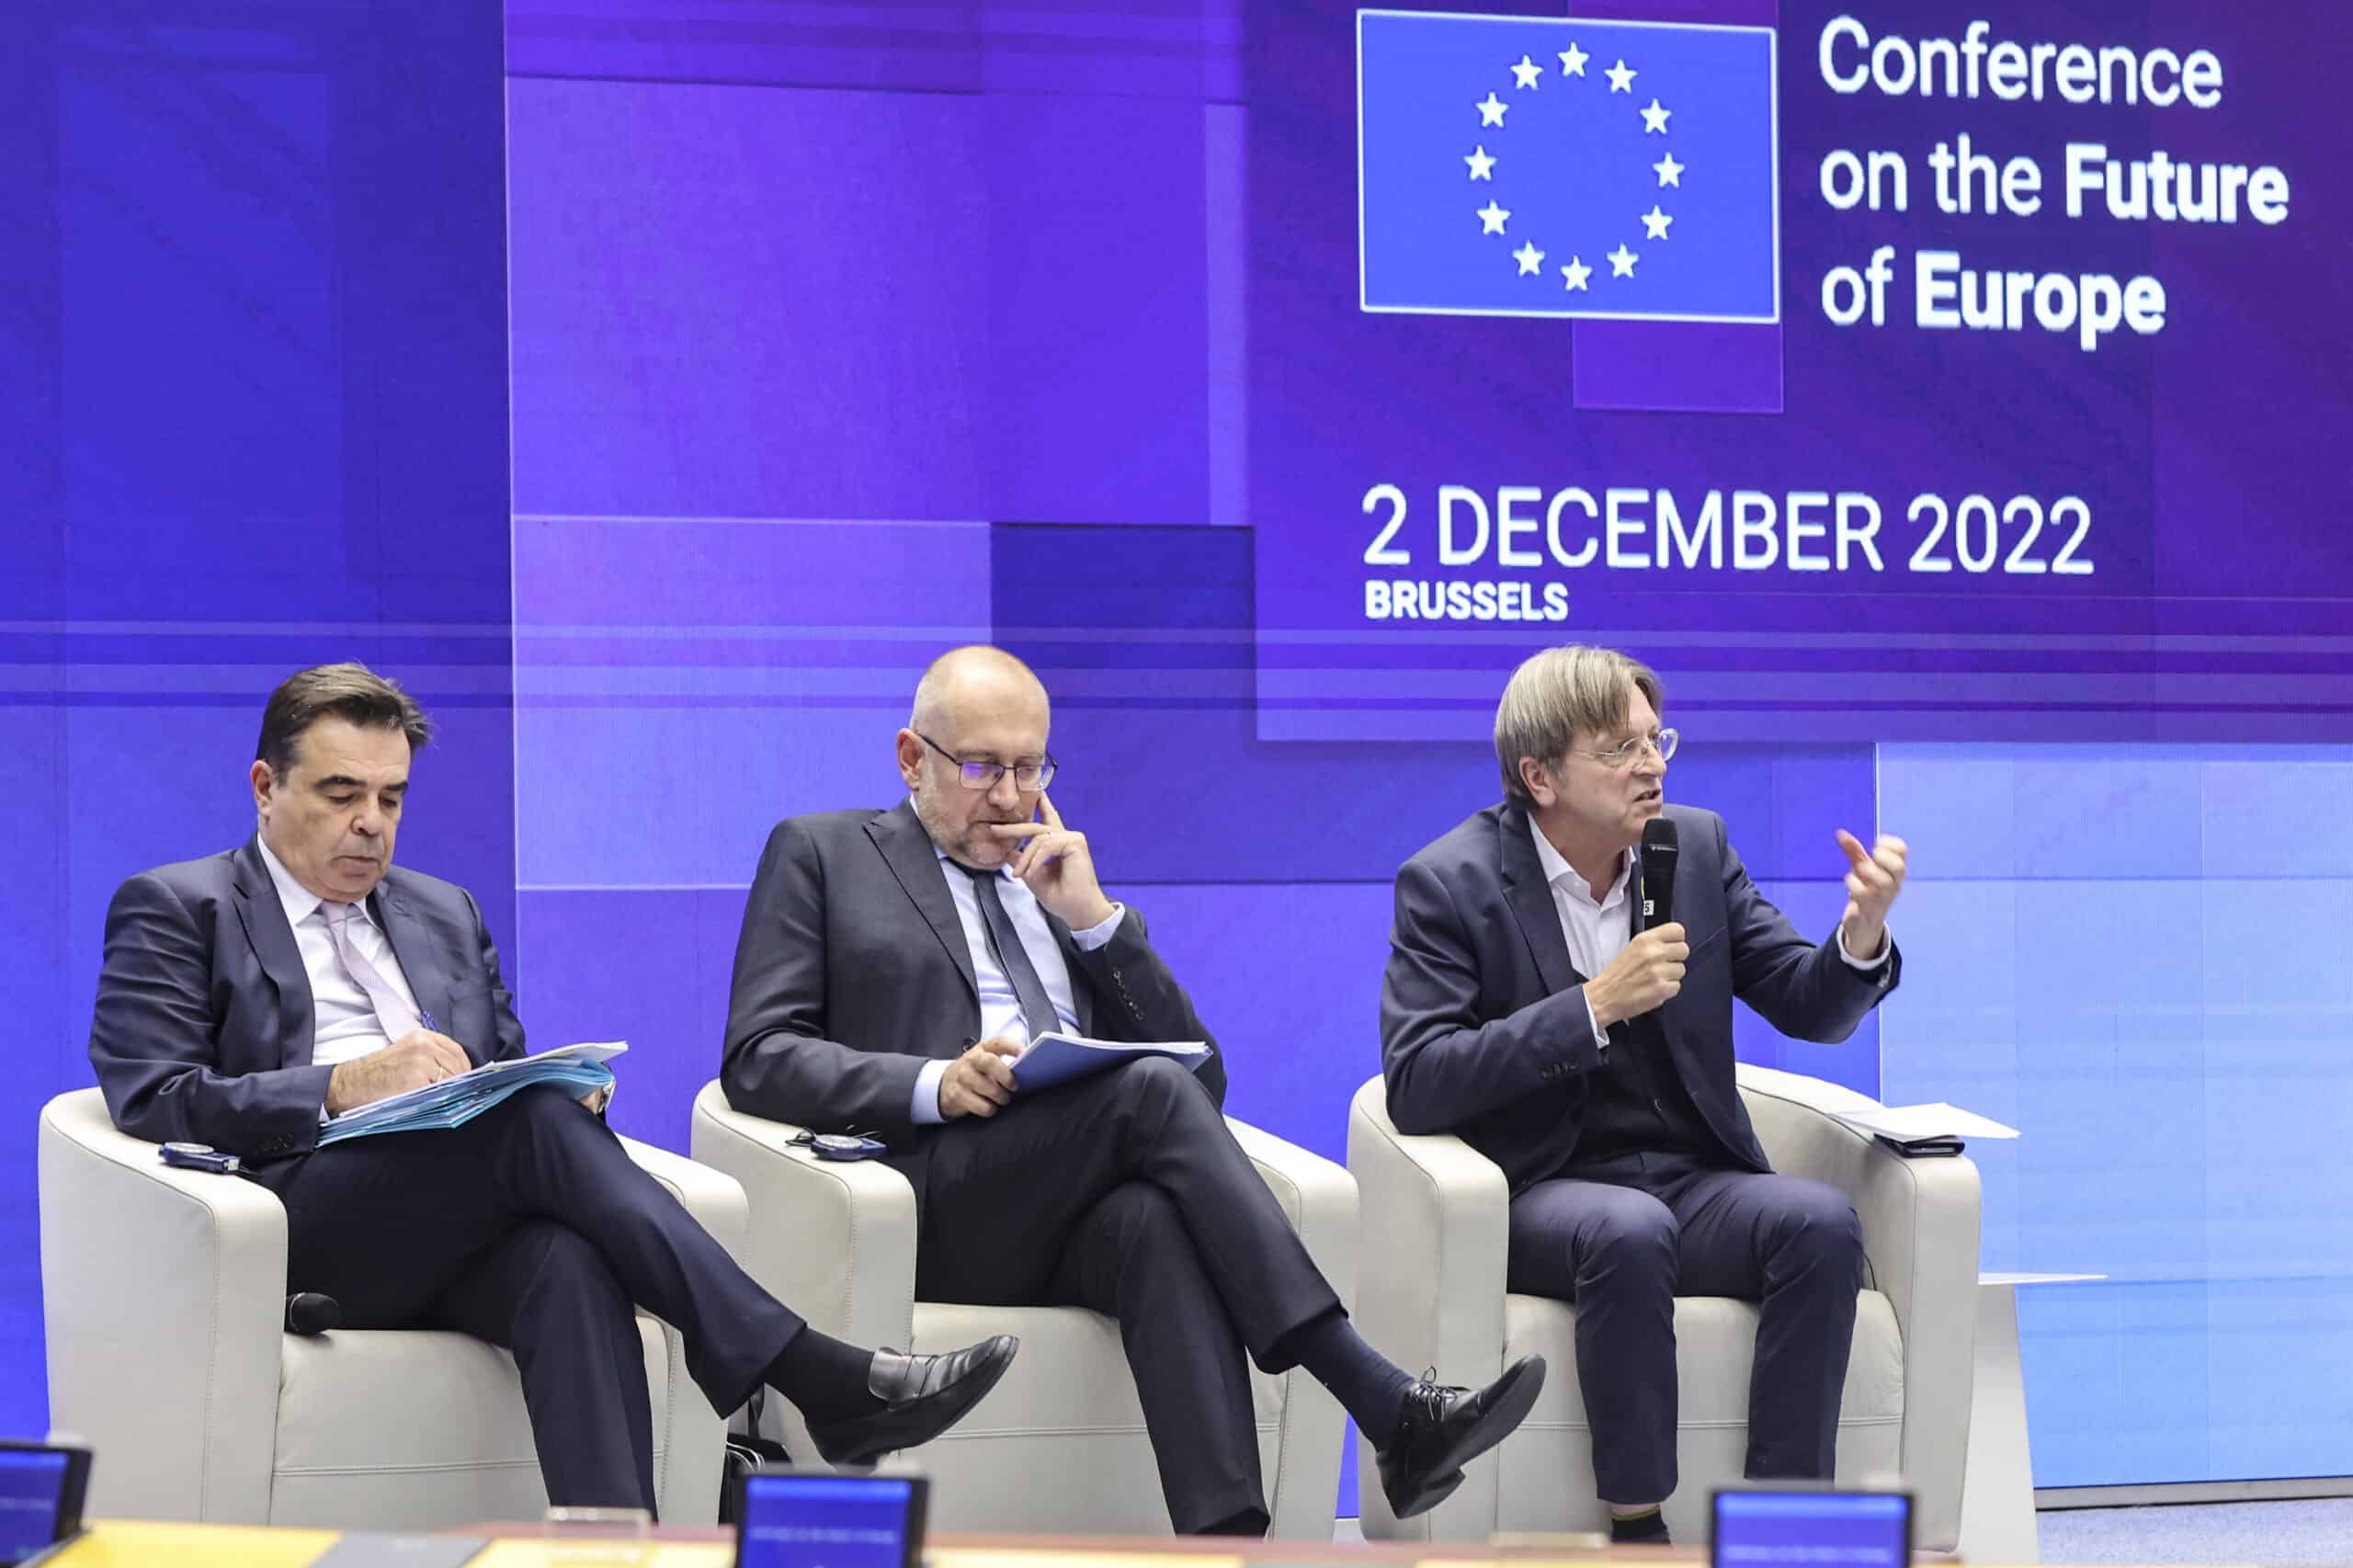 Přečtete si více ze článku Konference o budoucnosti Evropy: feedback event s občany